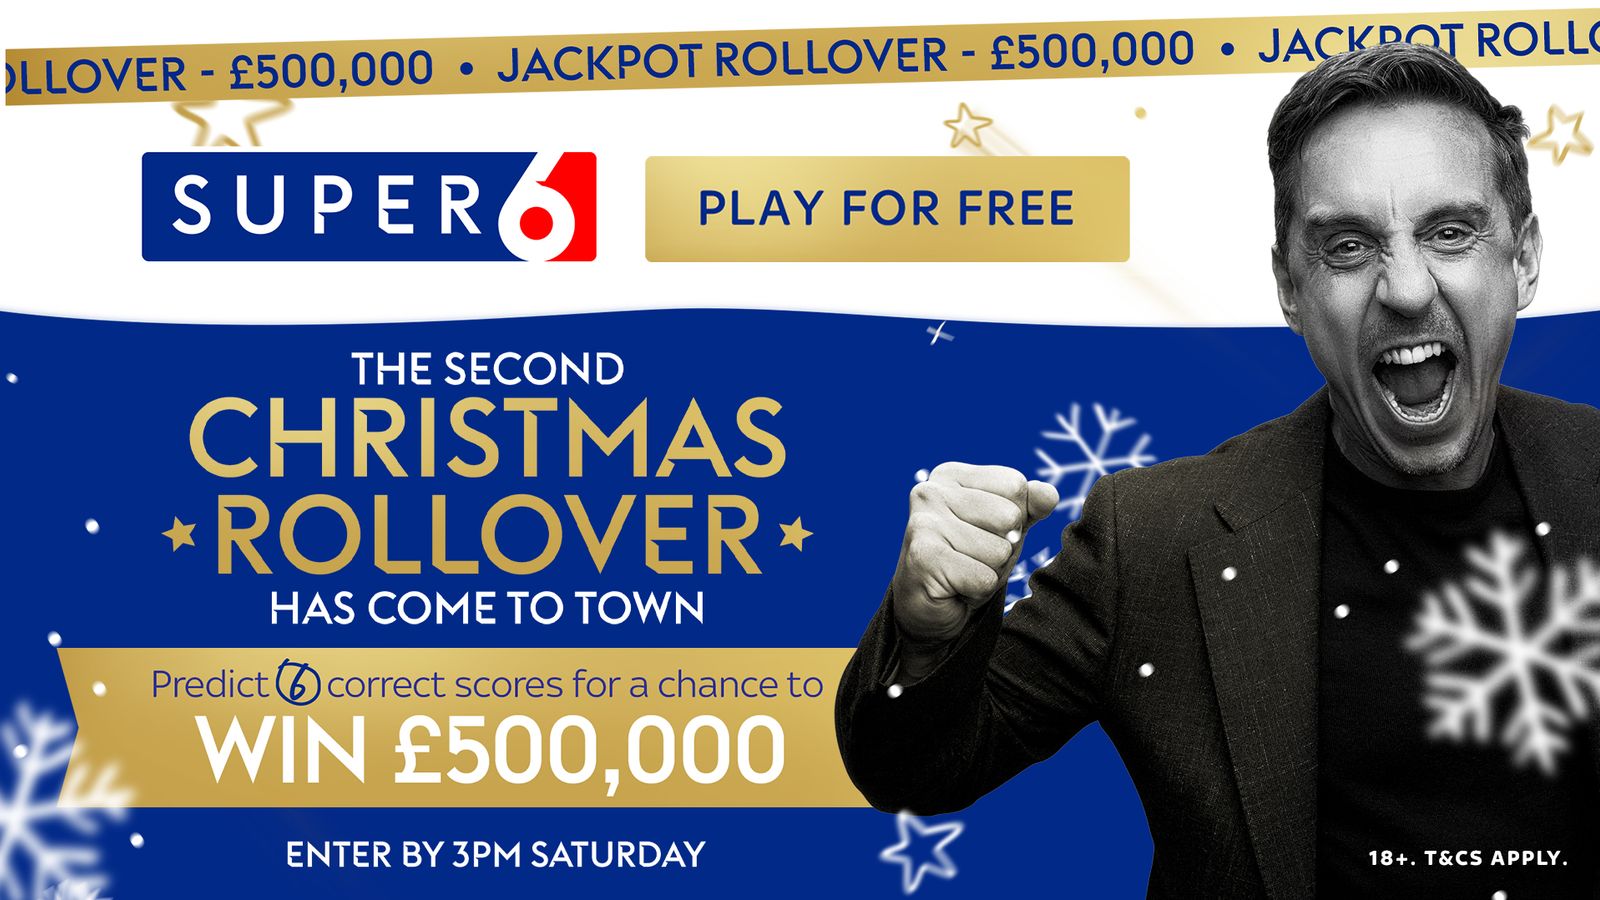 Super 6 Christmas Rollover: รับรางวัลมากถึง 1,000,000 ปอนด์ก่อนวันคริสต์มาส!  |  ข่าวฟุตบอล